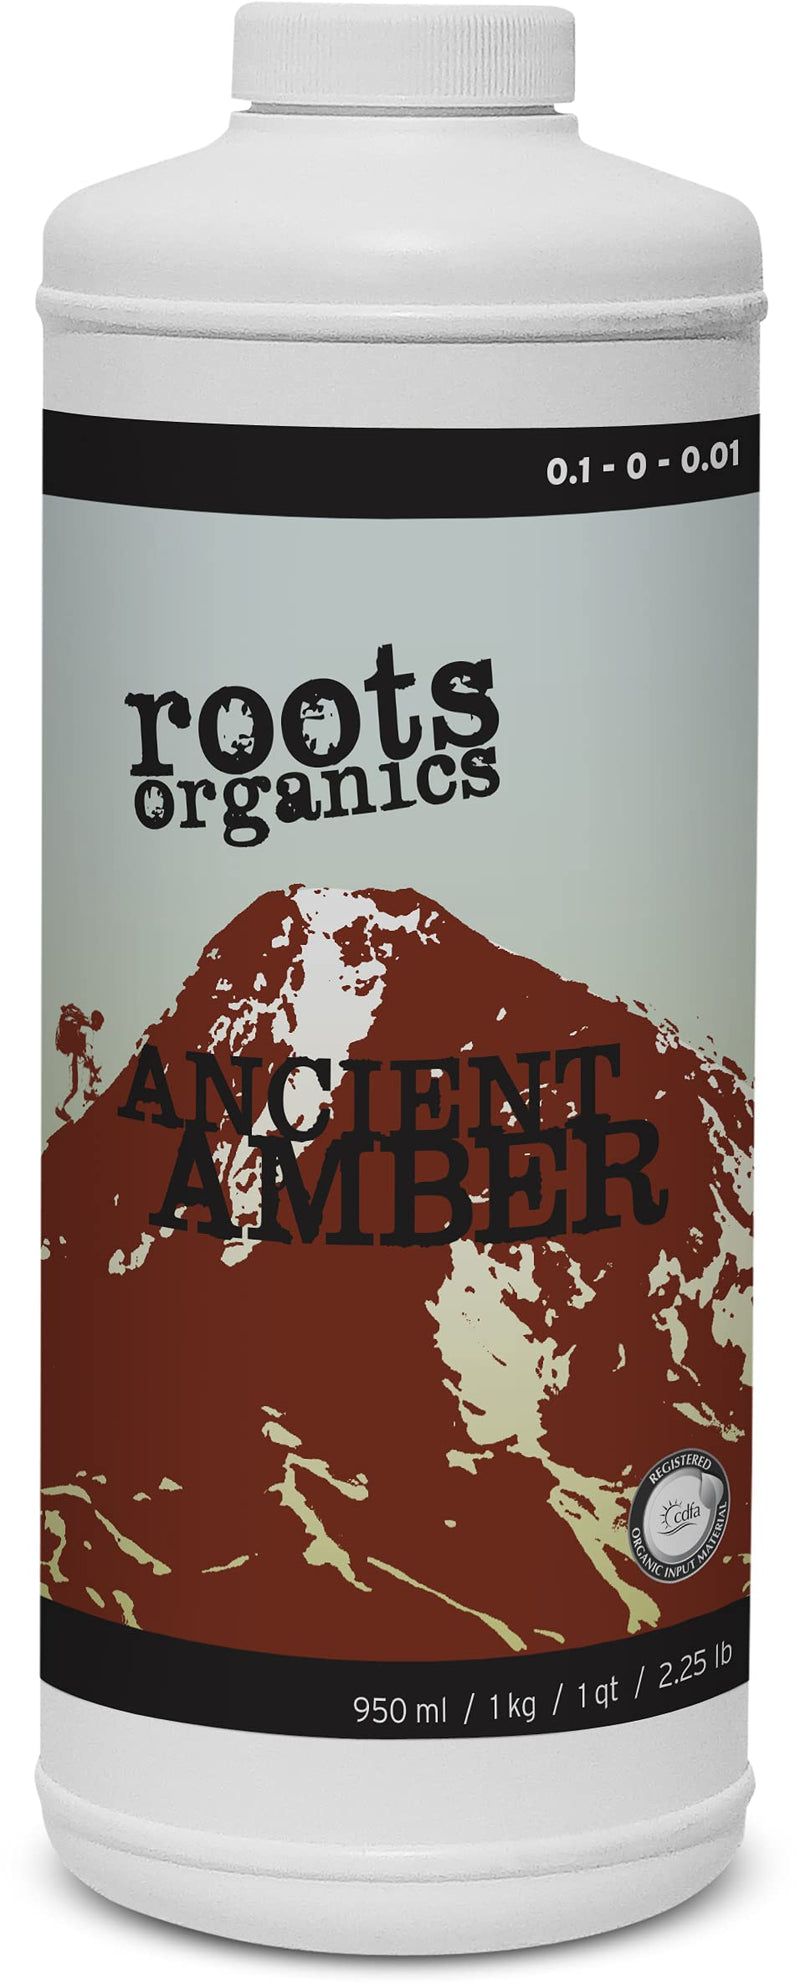 Roots Organics Ancient Amber Fertilizer, 1-Quart